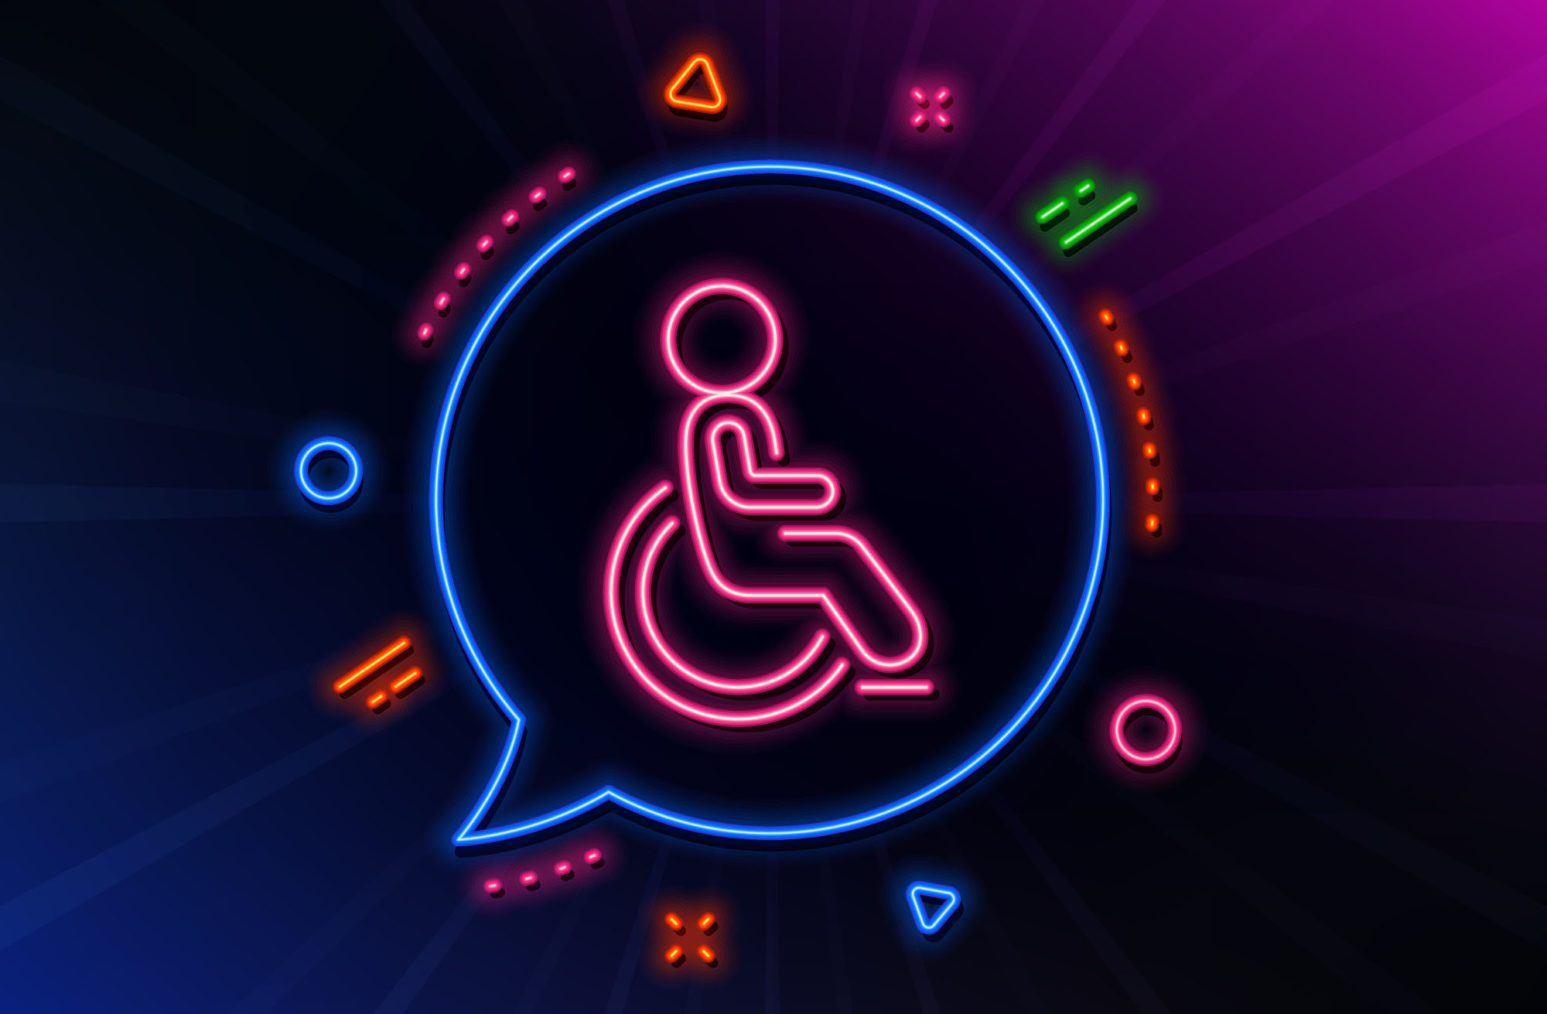 Illustrasjon med rullestolsymbolet i et neonskilt.